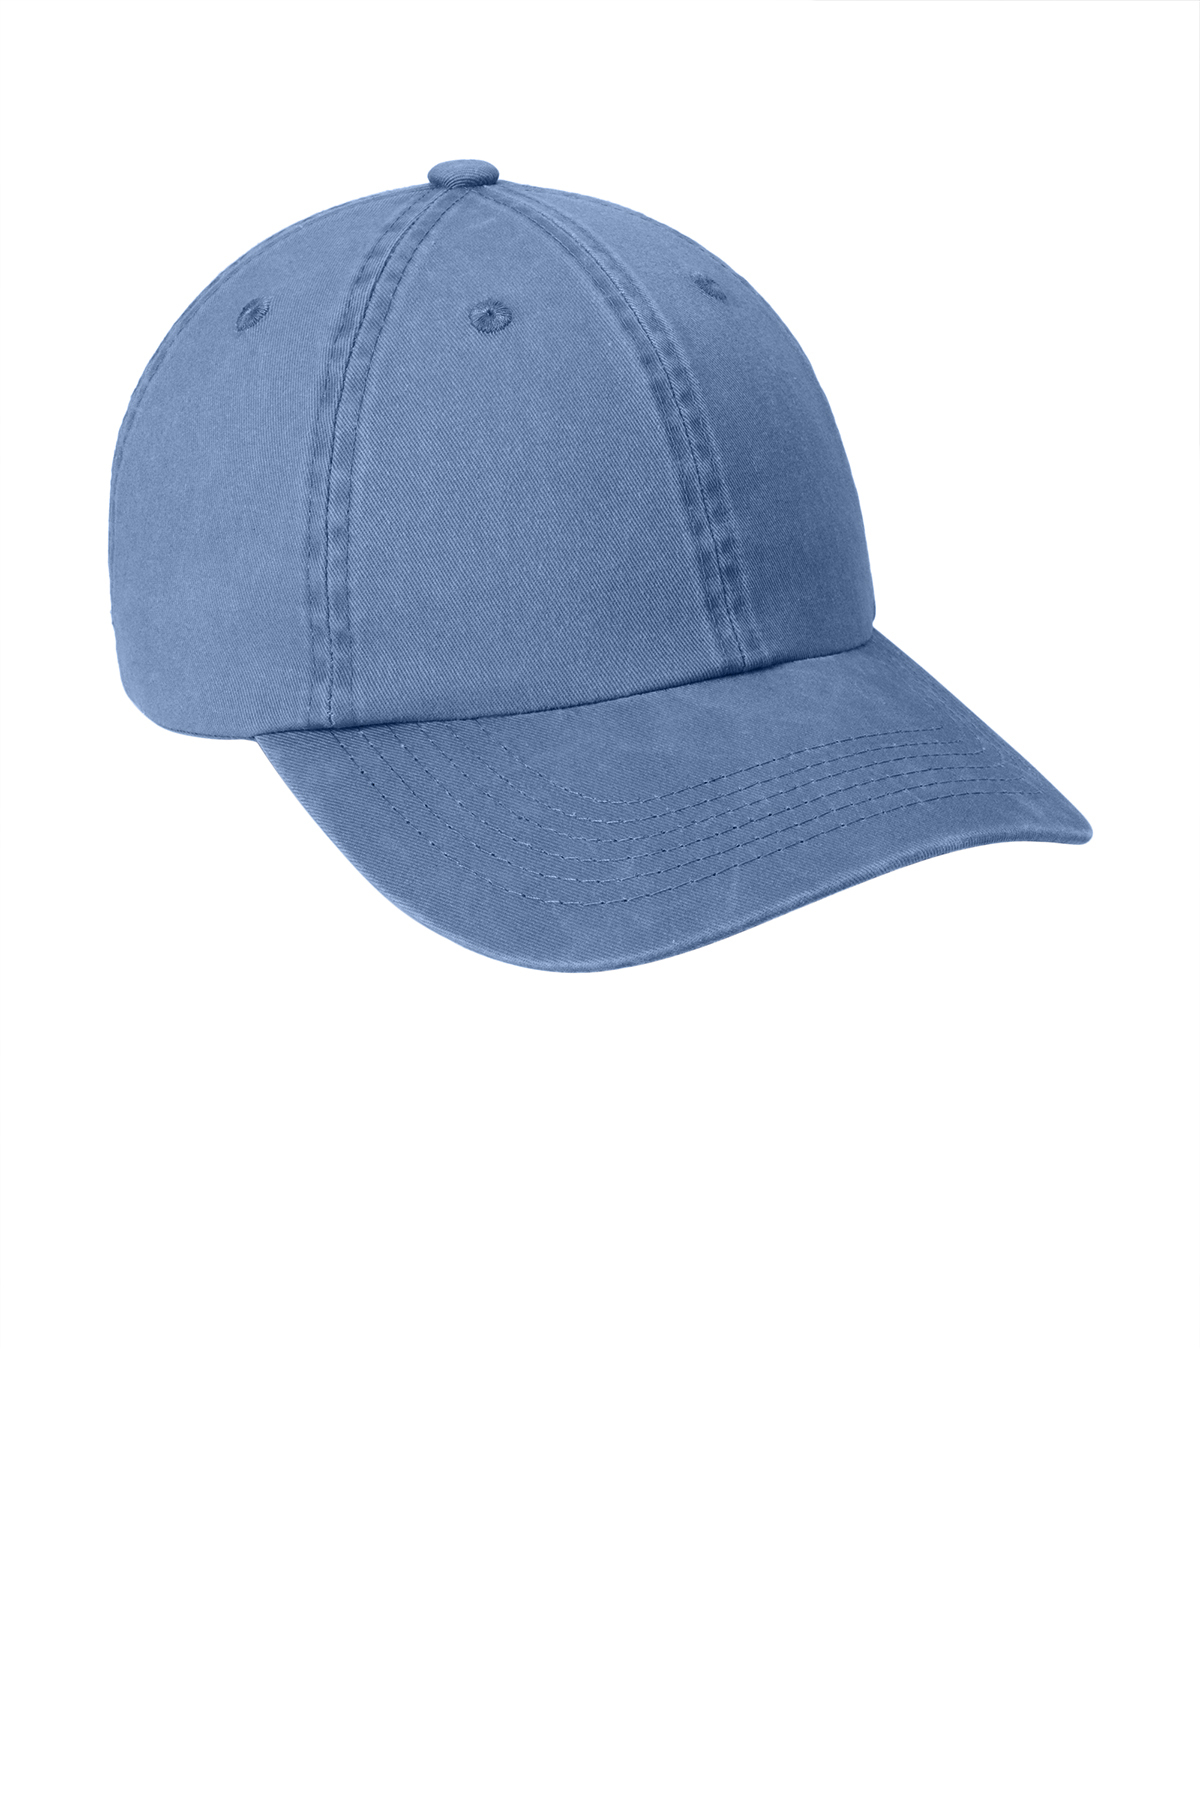 Adams® Stonewash Hat - Navy